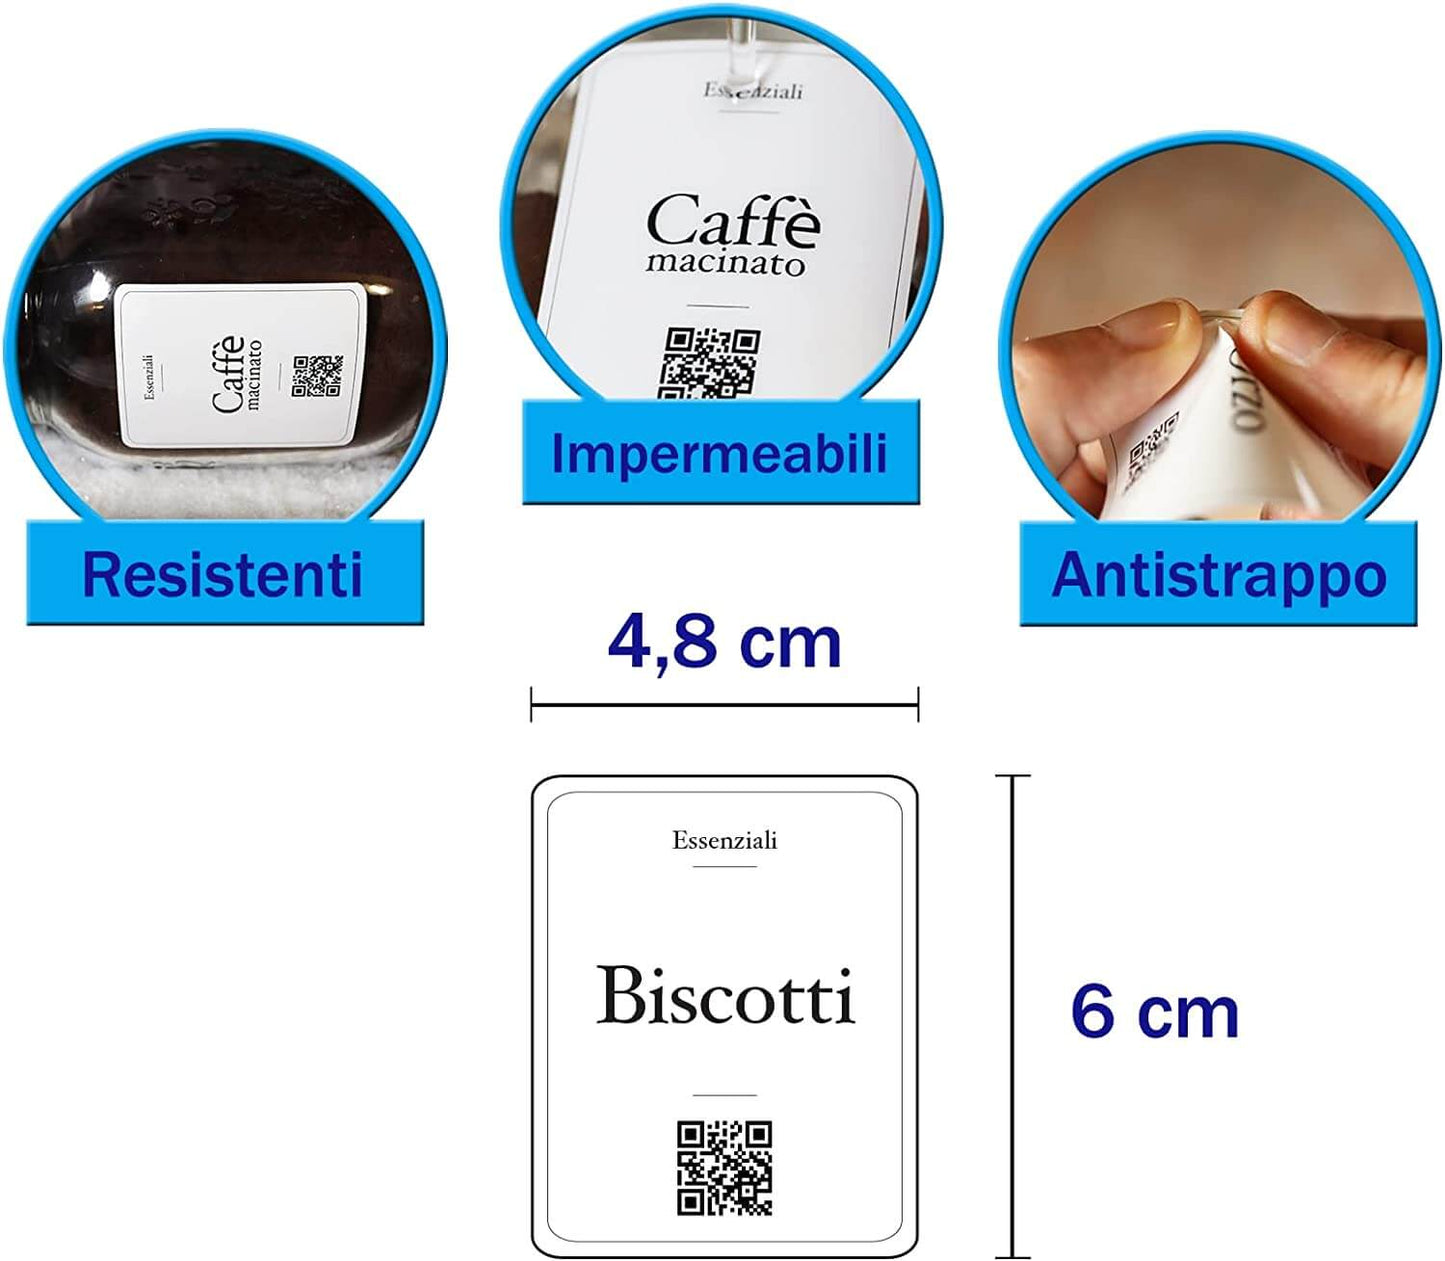 Etichette Essenziali per Dispensa: Adesivi per Pasta, Riso, Tè e Altro